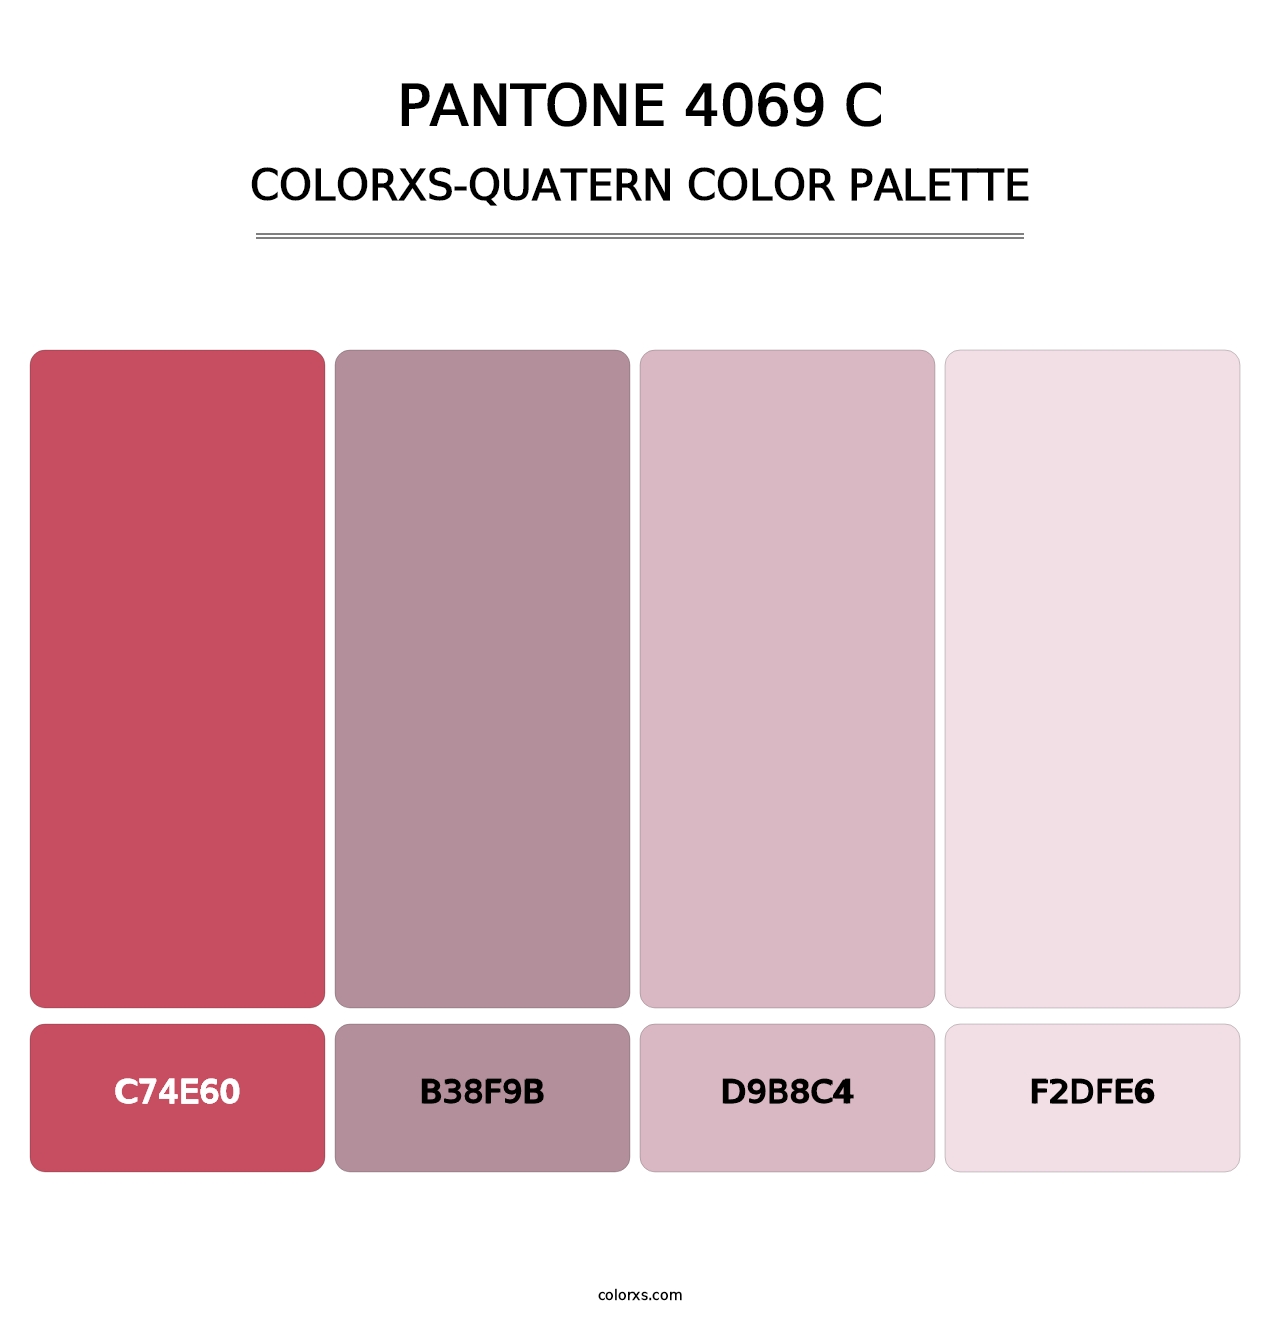 PANTONE 4069 C - Colorxs Quatern Palette